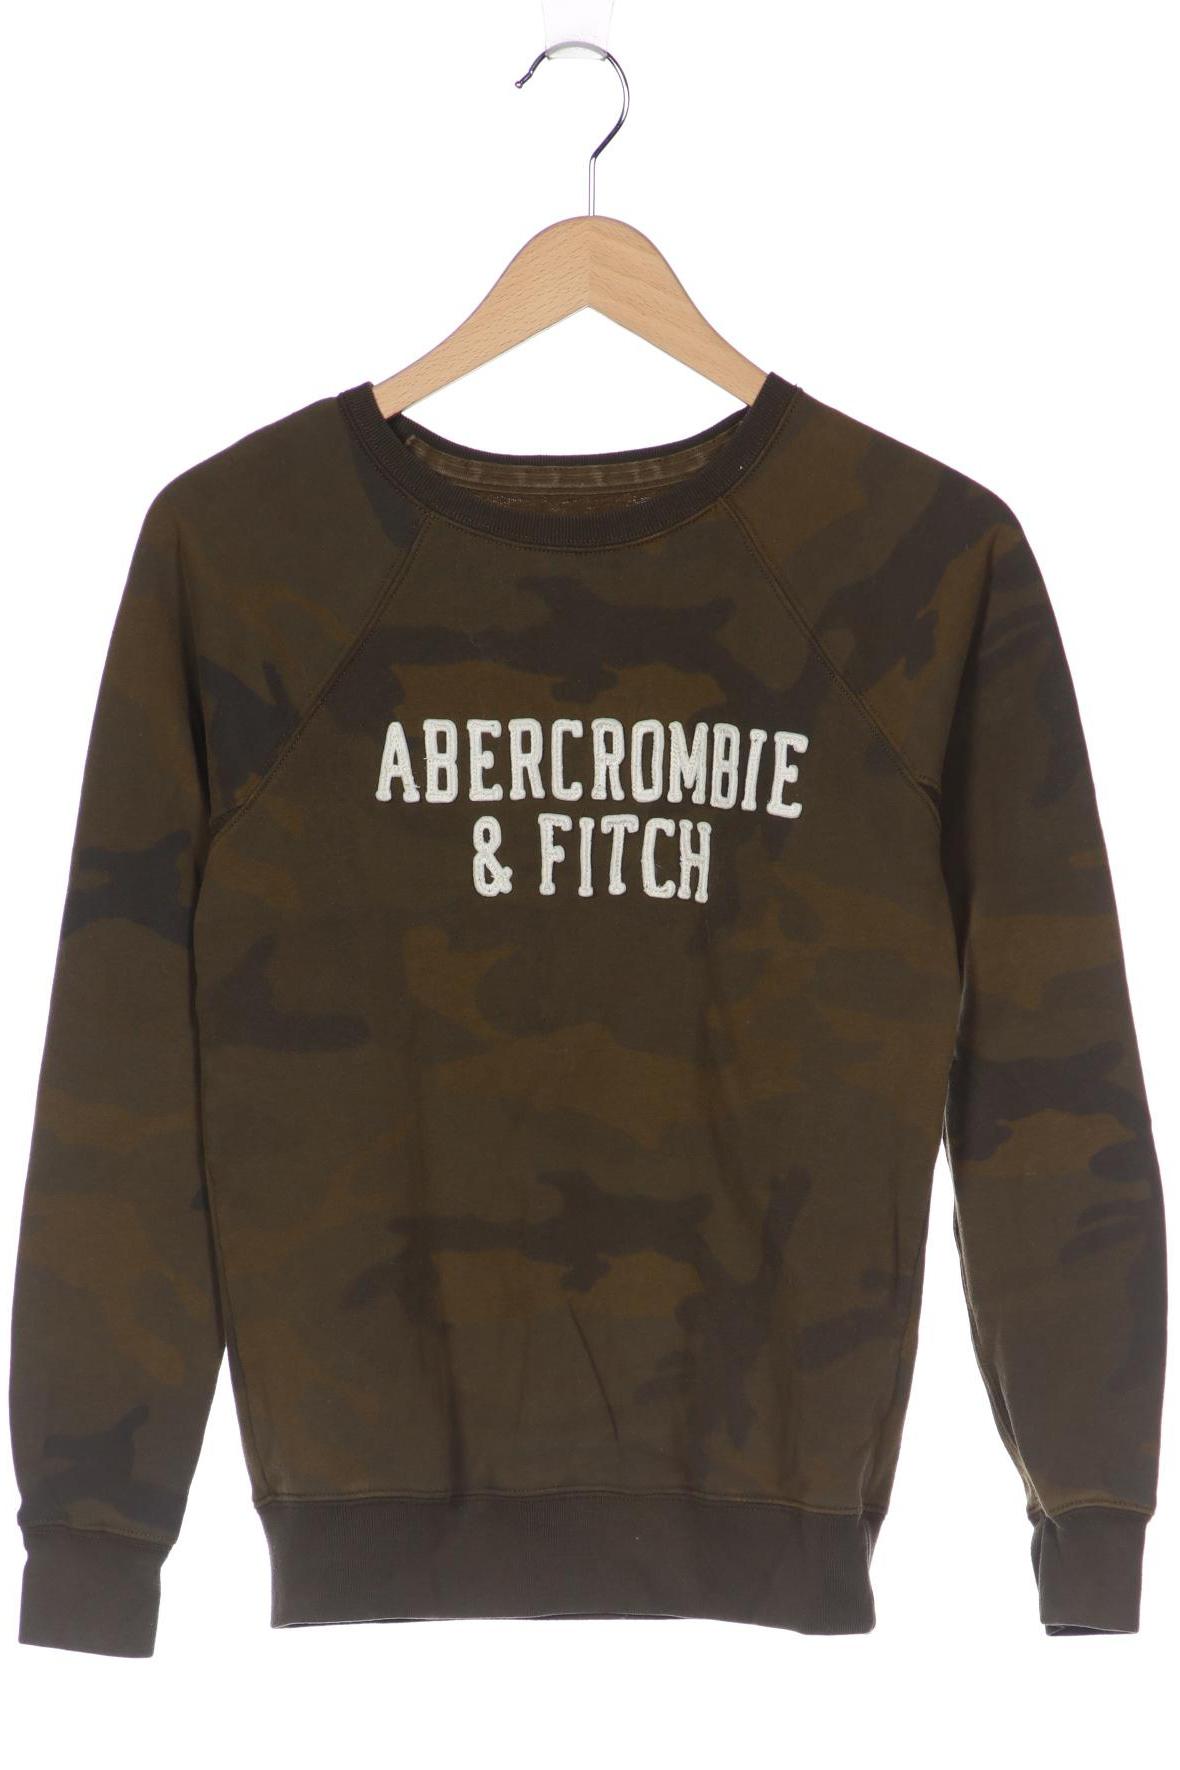 Abercrombie & Fitch Damen Sweatshirt, grün von Abercrombie & Fitch